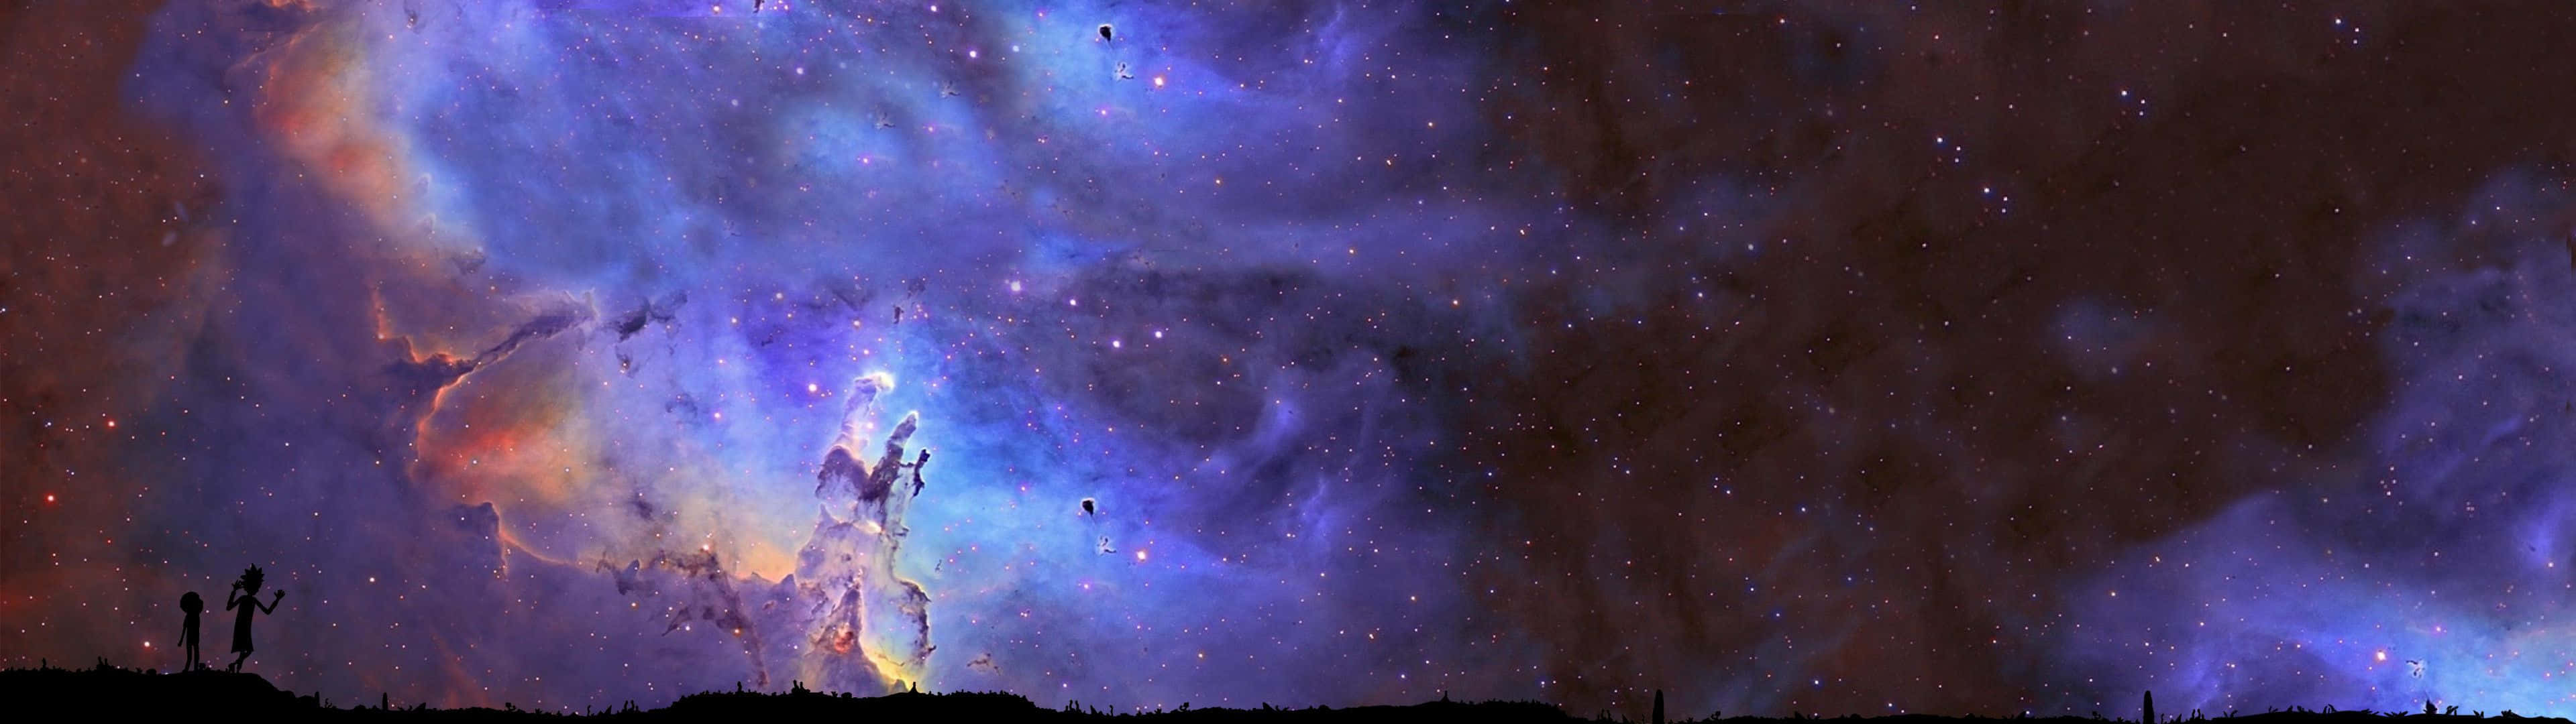 Unaimagen Cautivadora De Galaxias En Un Paisaje Etéreo. Fondo de pantalla